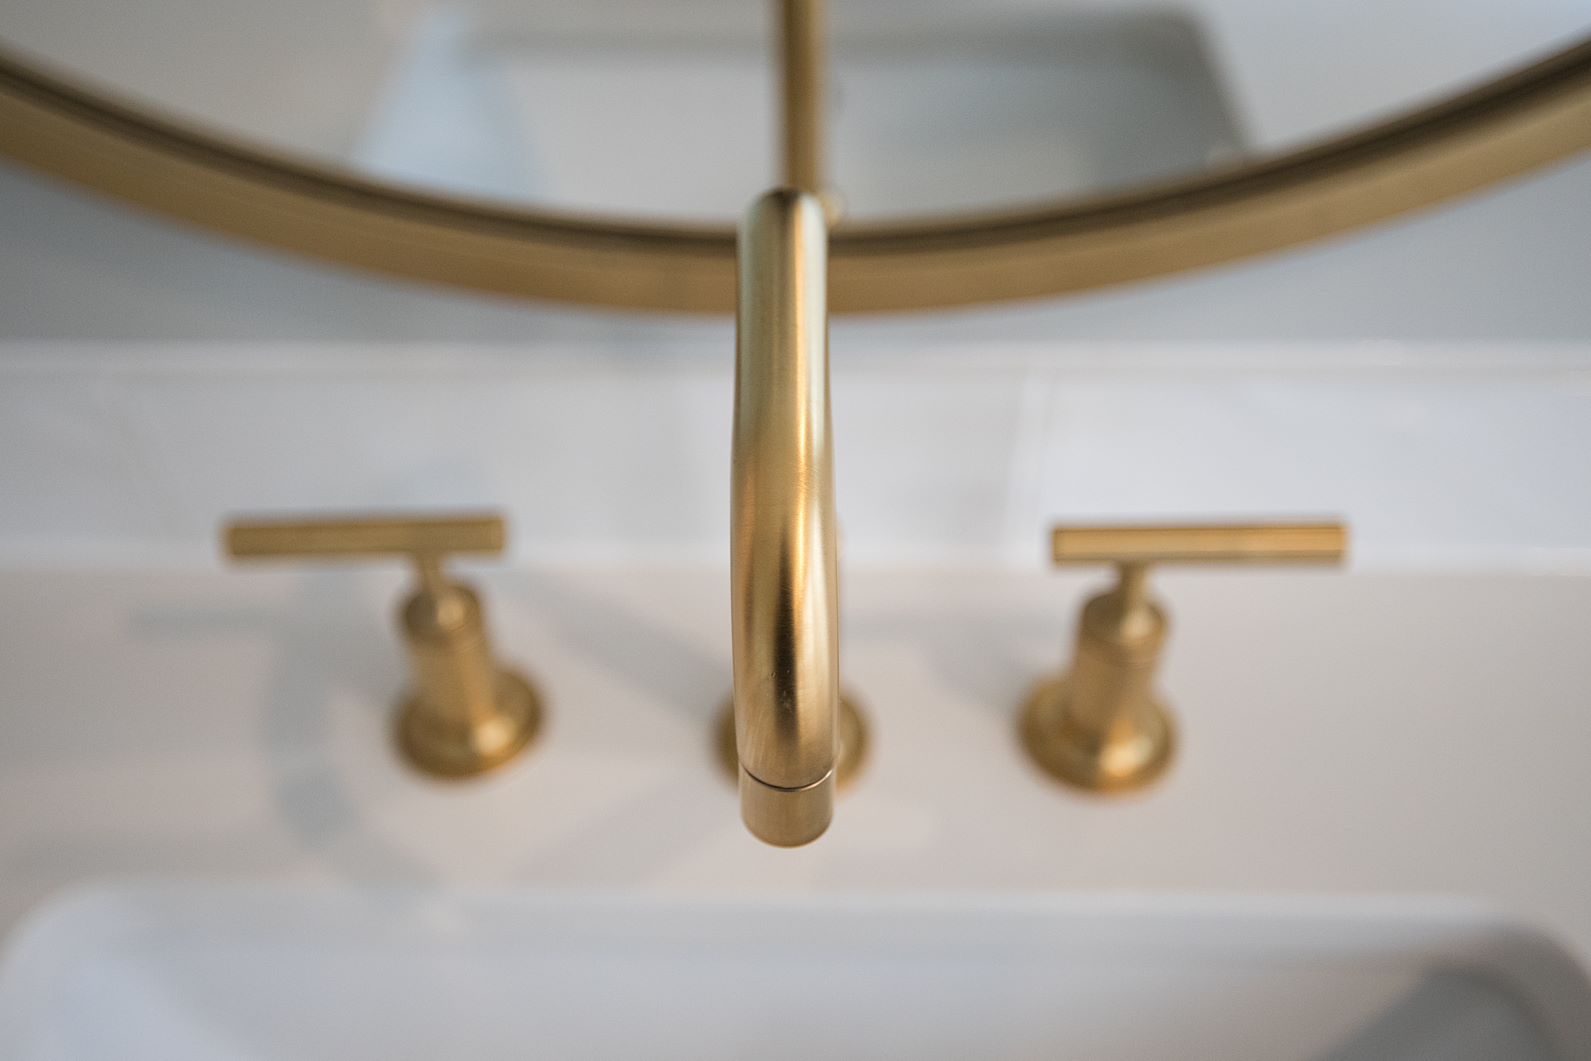 premier plumbing gold faucet image